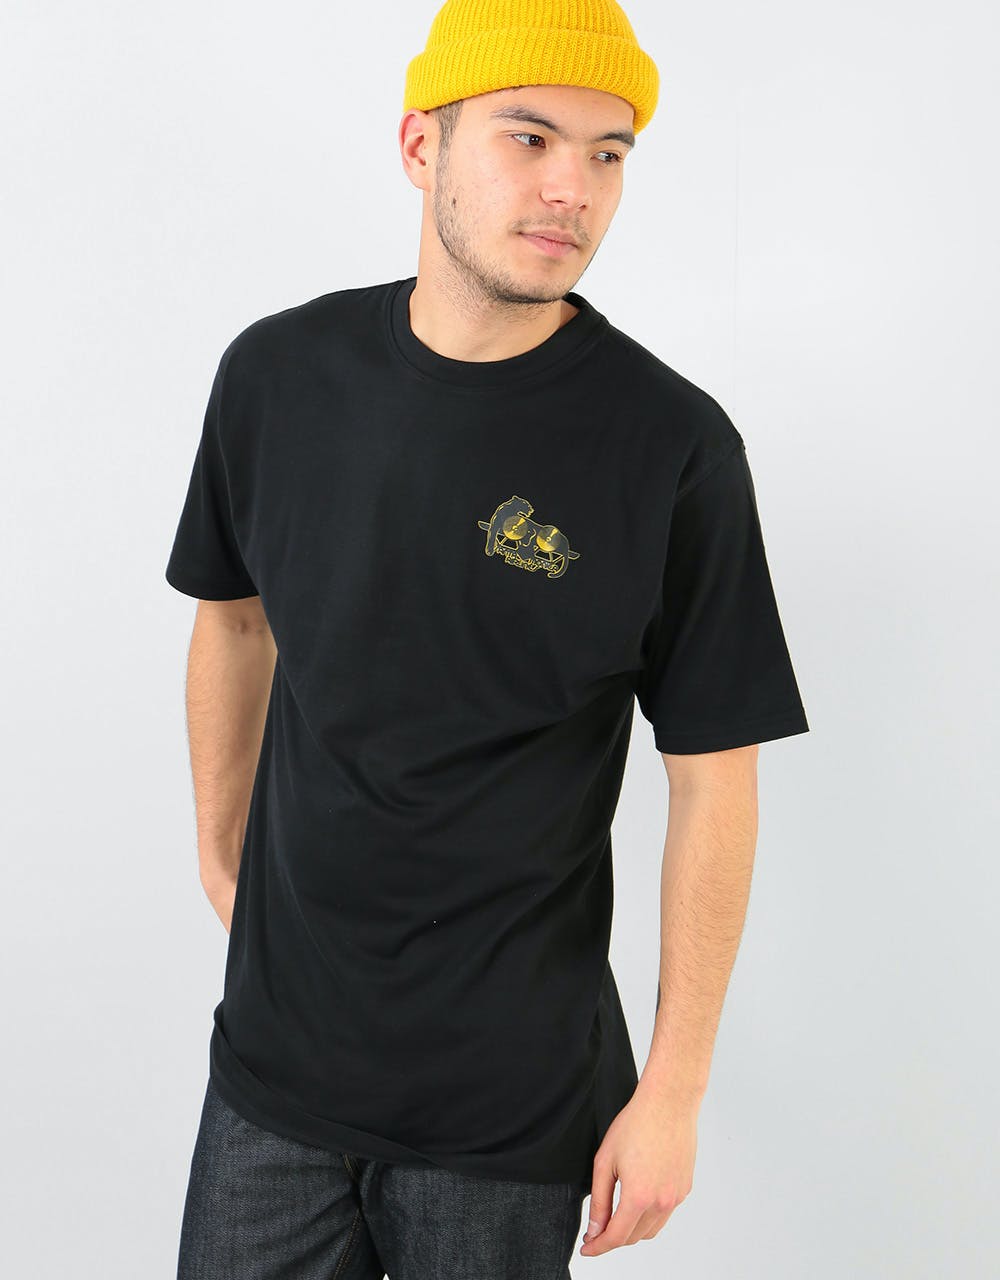 Santa Cruz SMA Natas Panther T-Shirt - Black